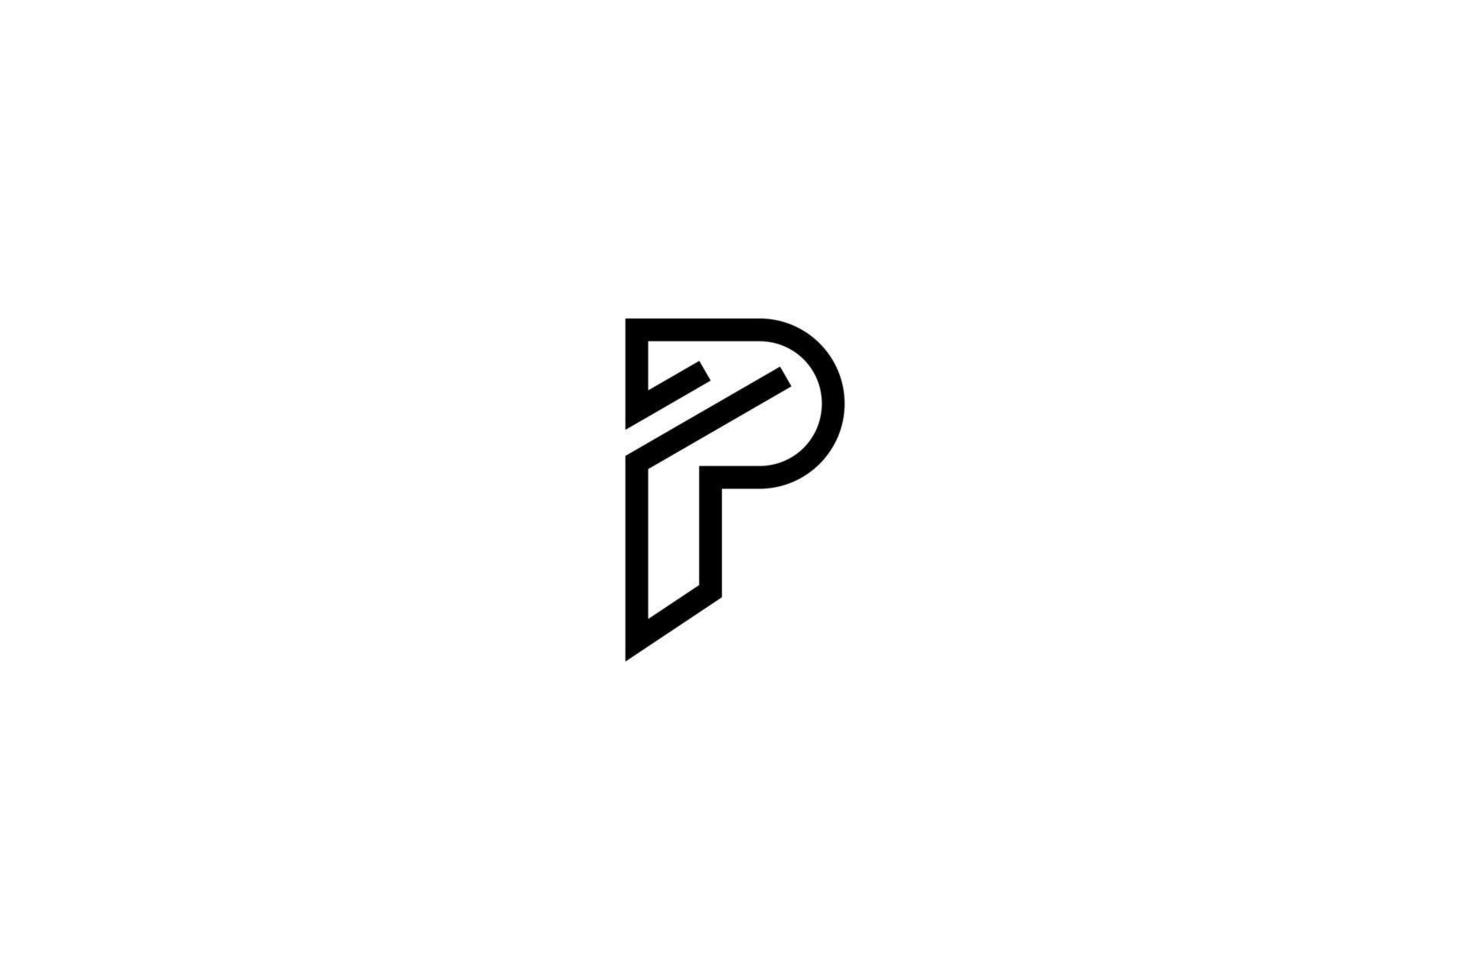 création de logo de progression lettre p minimale vecteur